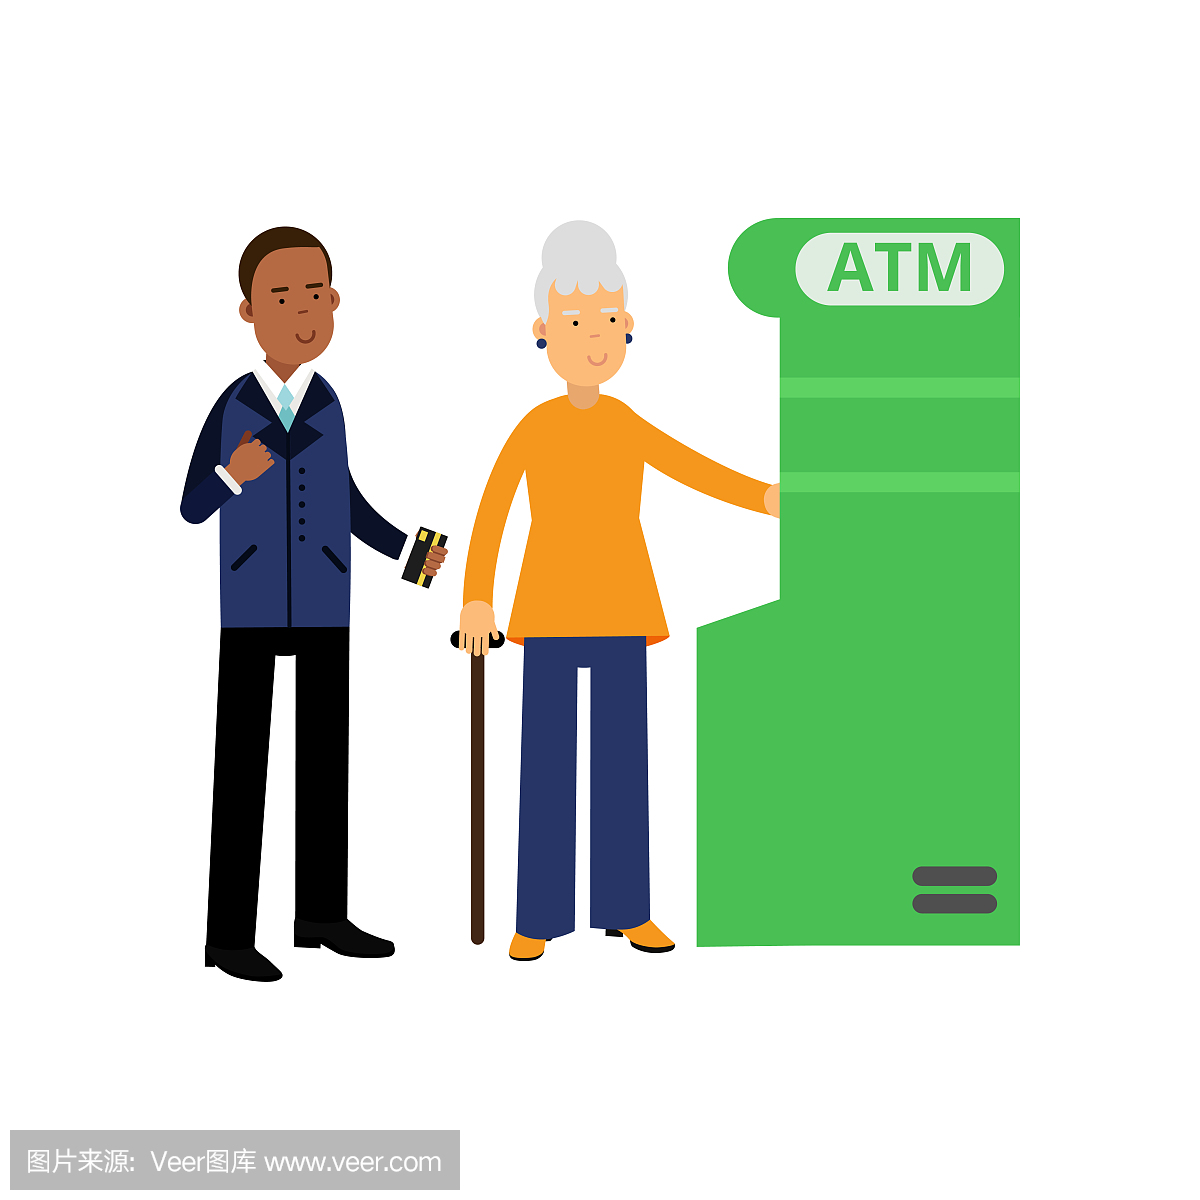 银行职员帮助老年妇女使用ATM。正式服装的